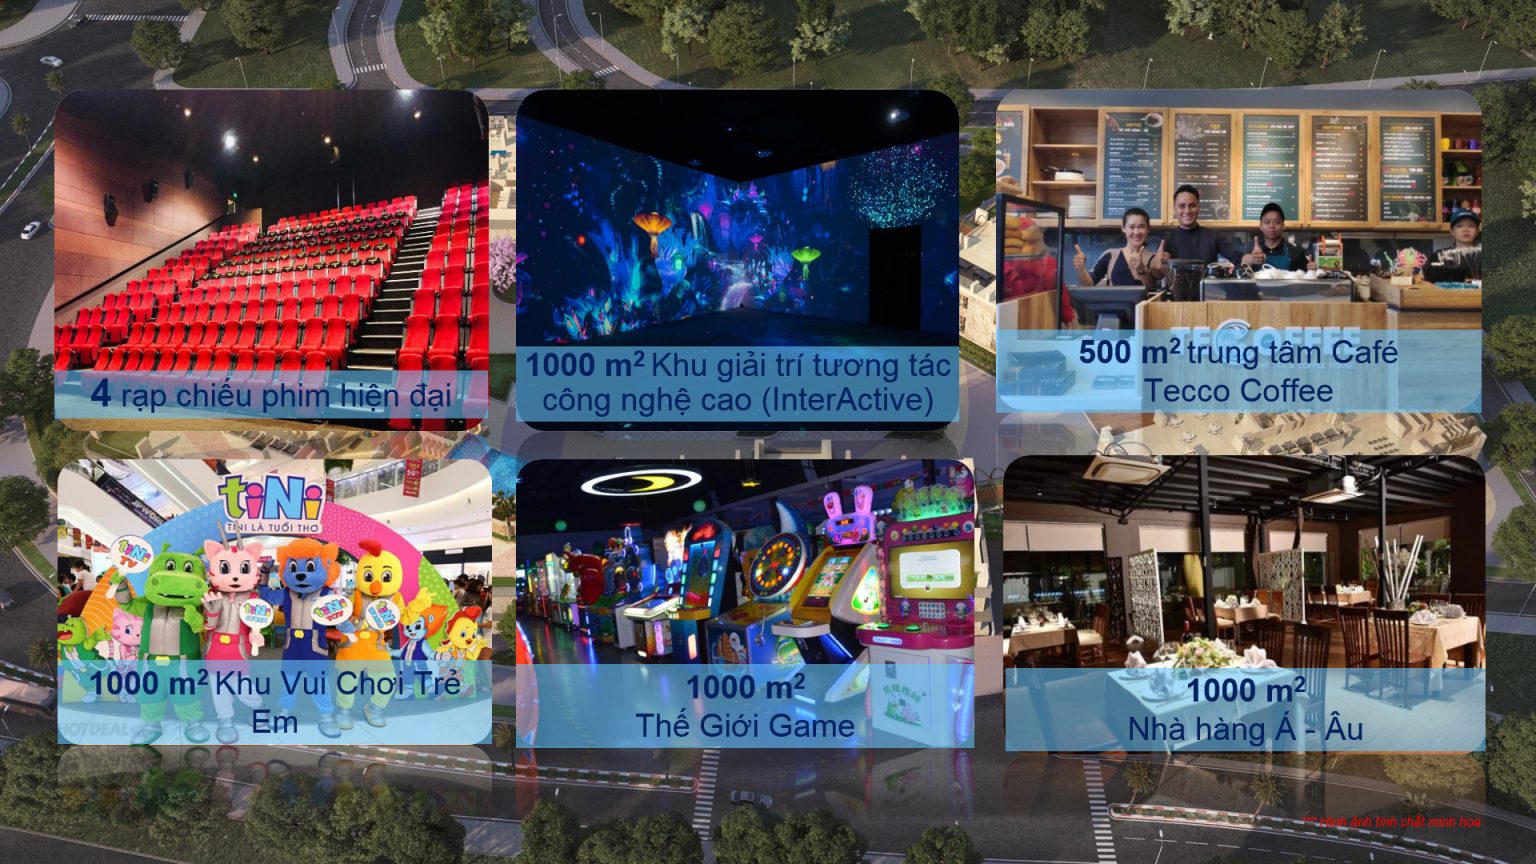 4 Rạp chiếu phim hiện đại Khu giải trí tương tác công nghệ cao 1000 m2 Trung tâm Cafe – Tecco Coffee 500 m2 Thế giới game 1000 m2 Nhà hàng Á – Âu 1000 m2